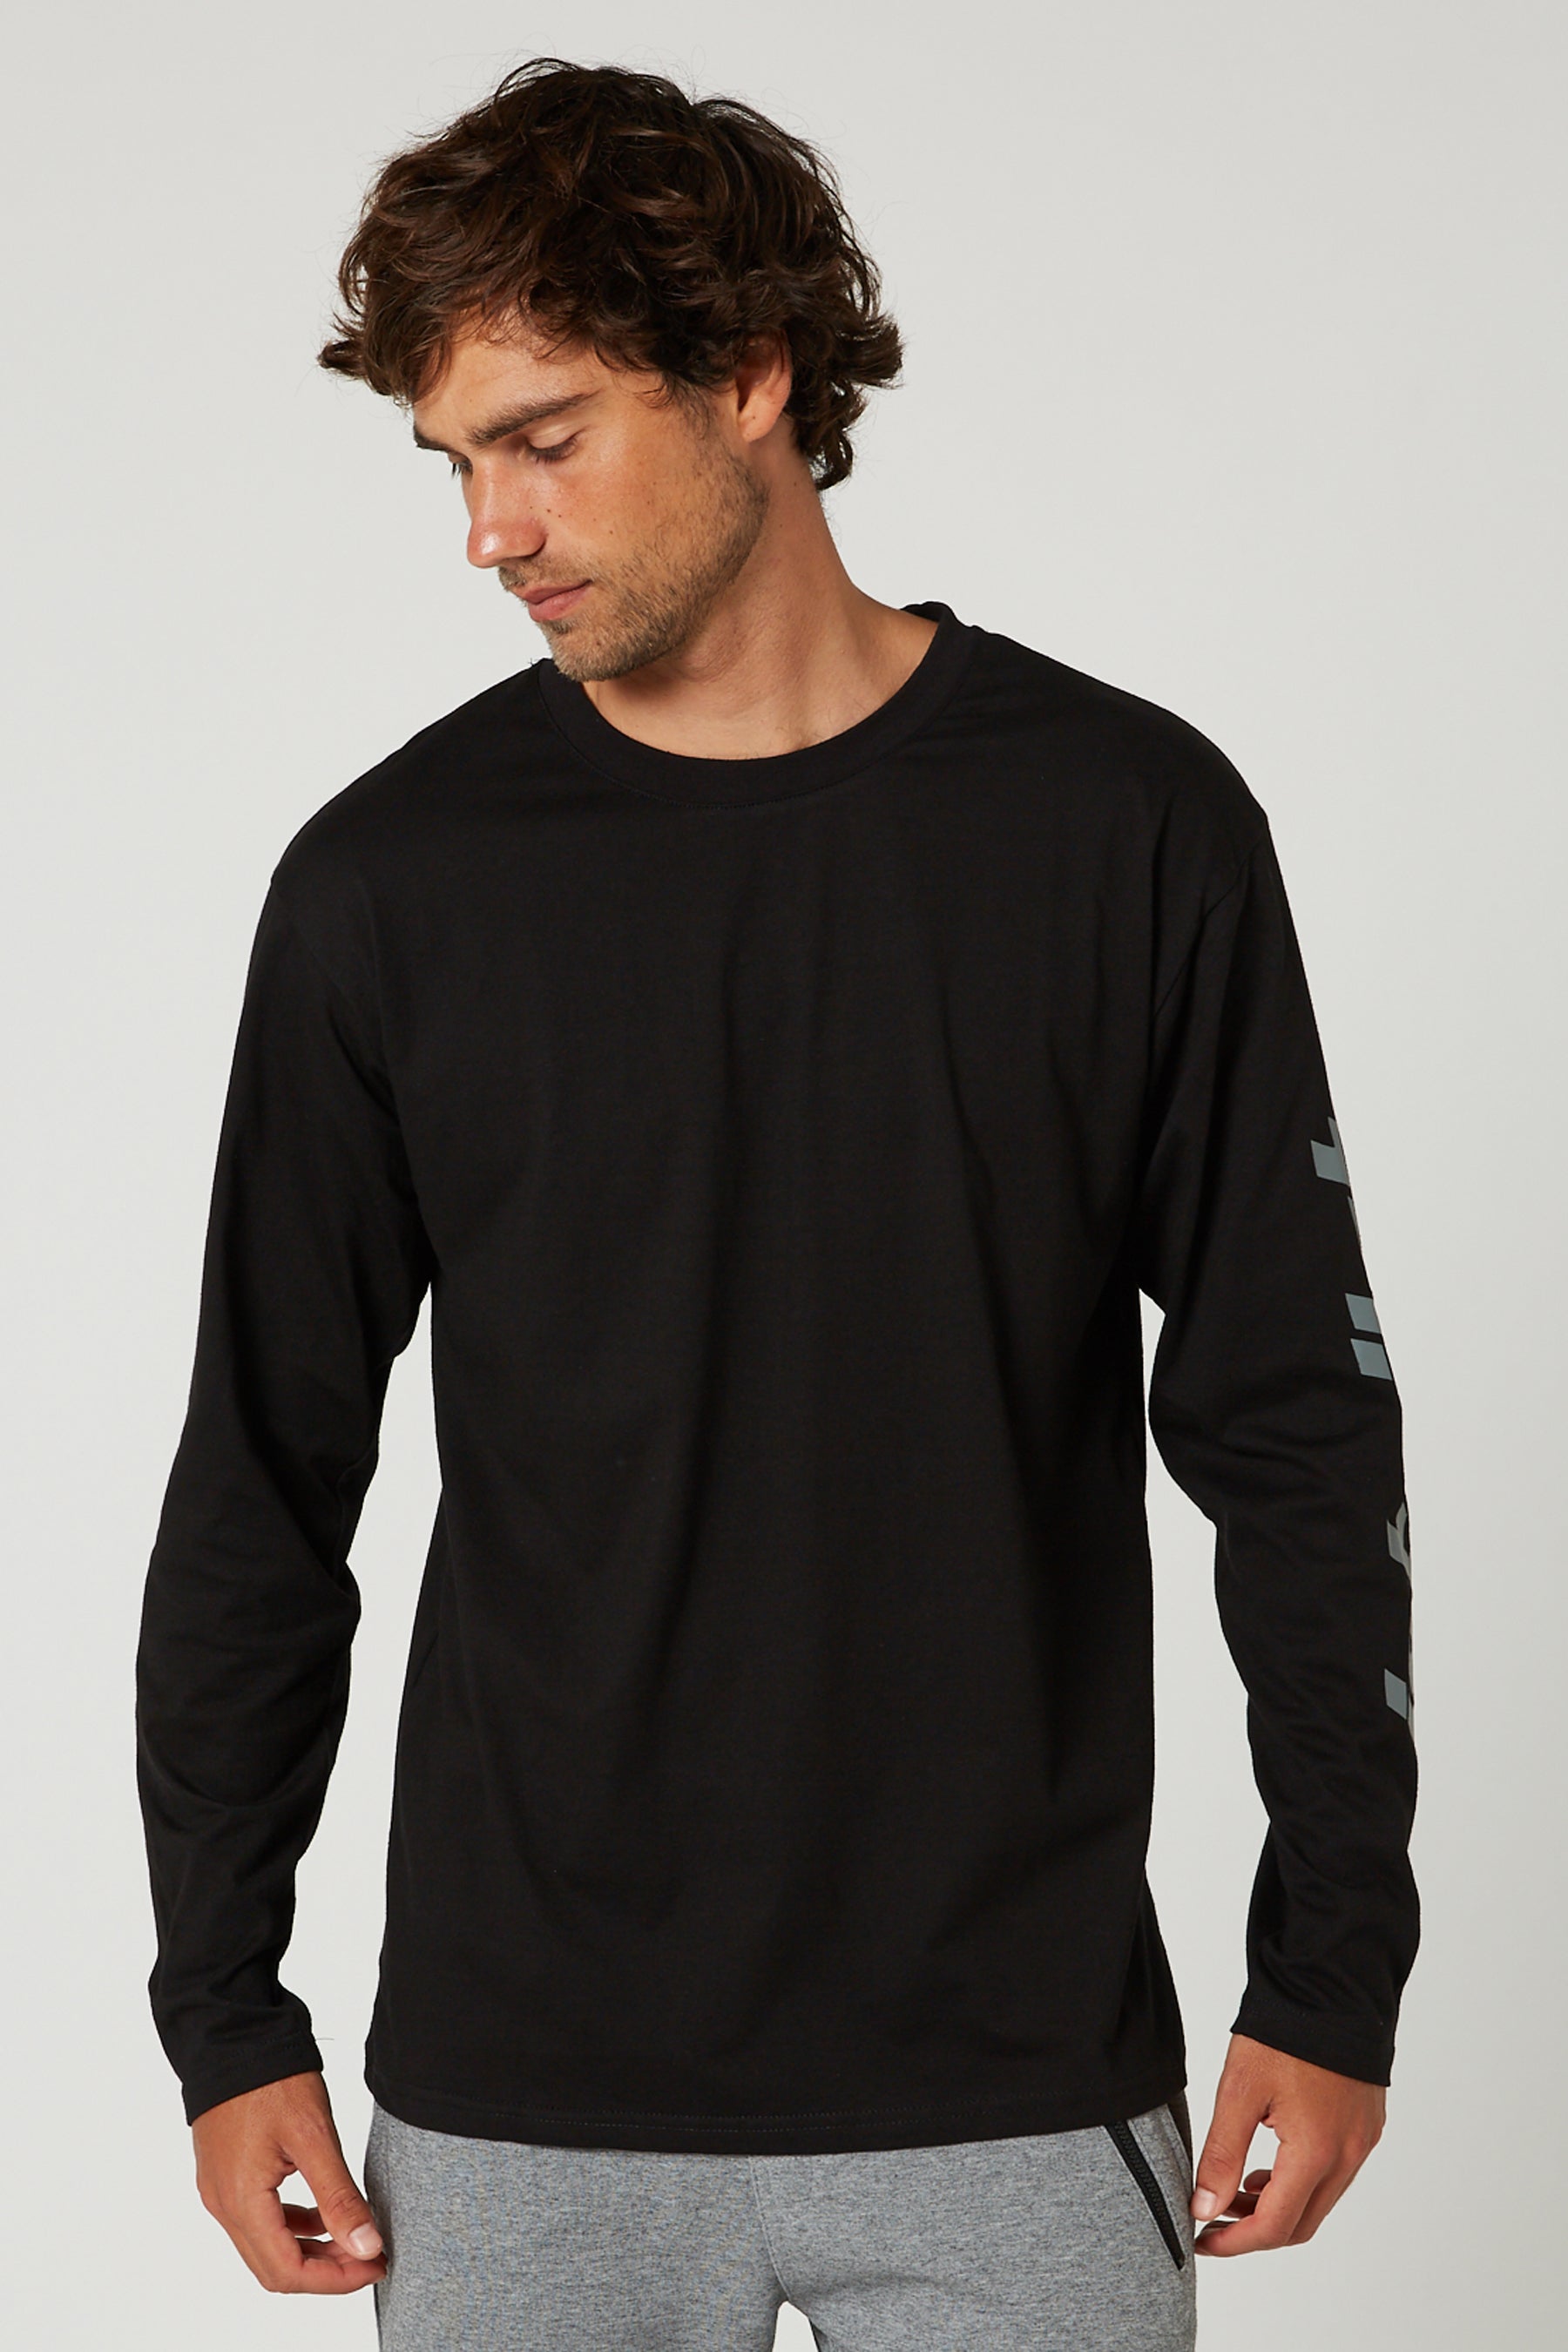 Jetpilot Techtonic L/S Mens T-Shirt - Black